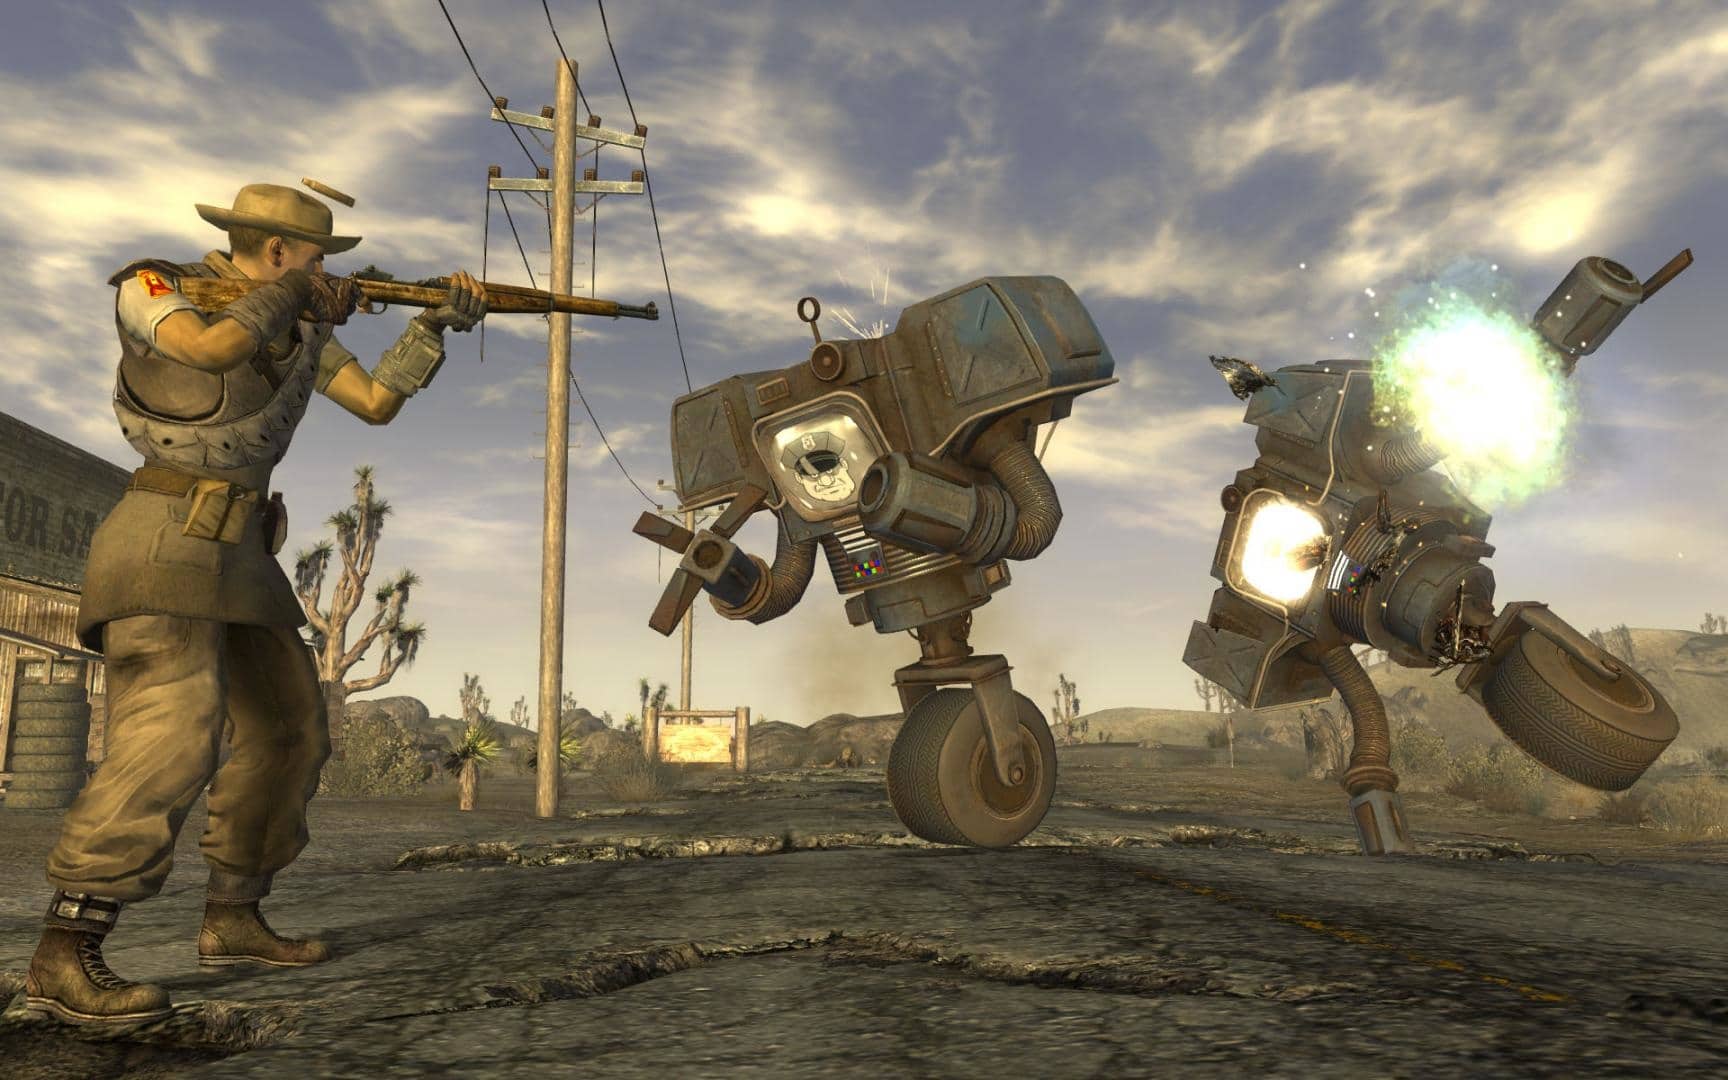 (Il secondo lancio fa guadagnare a Obsidian molto rispetto Fallout: New Vegas è un gioco di culto, ma soffre di bug. Il publisher Bethesda aveva probabilmente fissato una scadenza troppo stretta per il completamento)